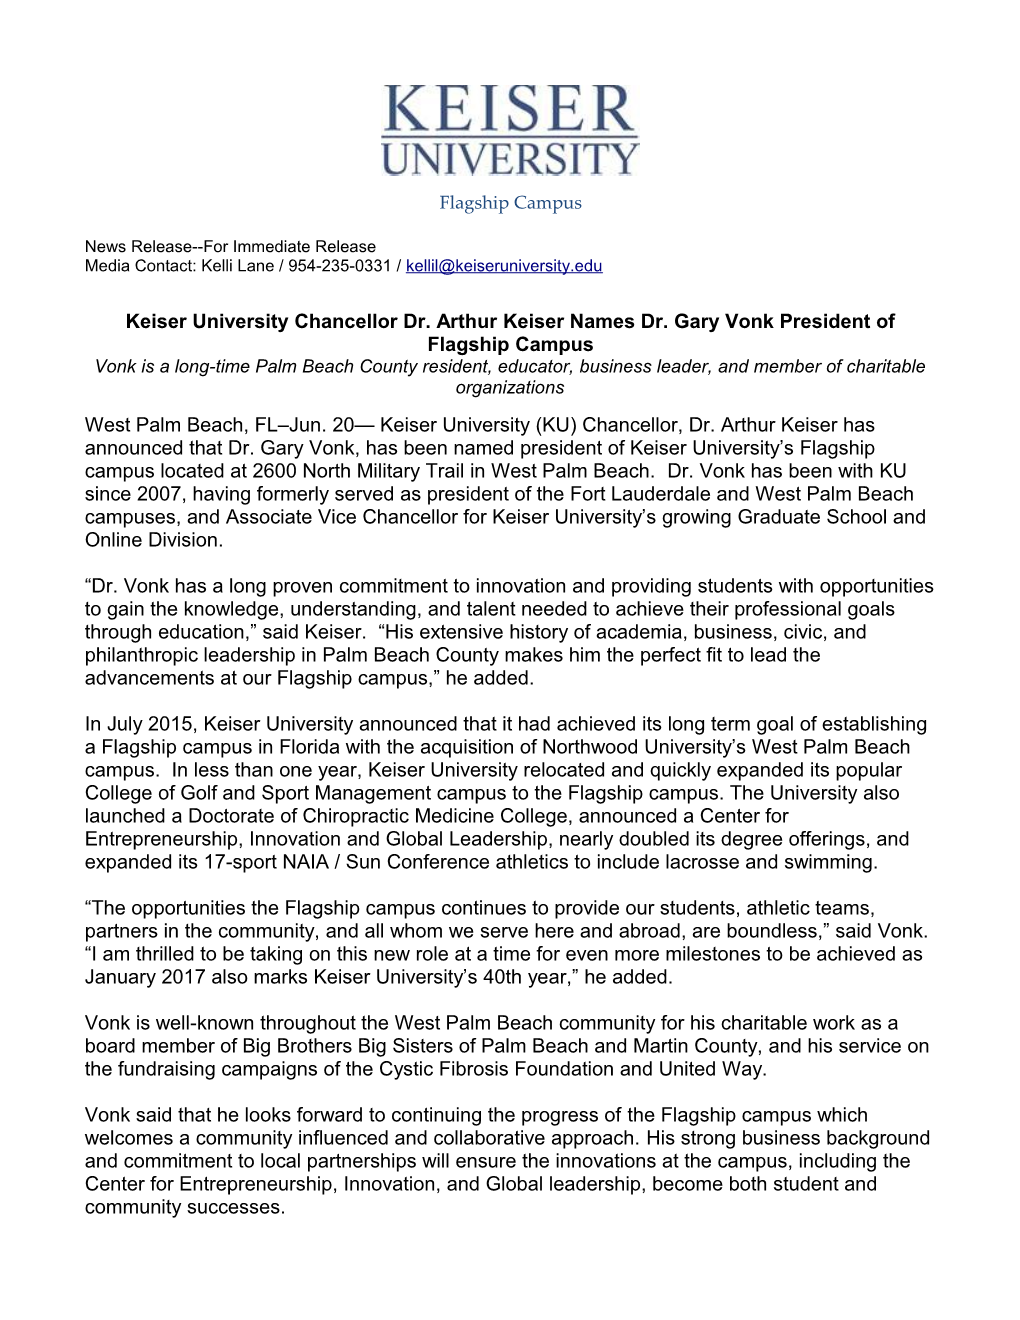 Keiser University Chancellor Dr. Arthur Keiser Names Dr. Gary Vonkpresident of Flagship Campus